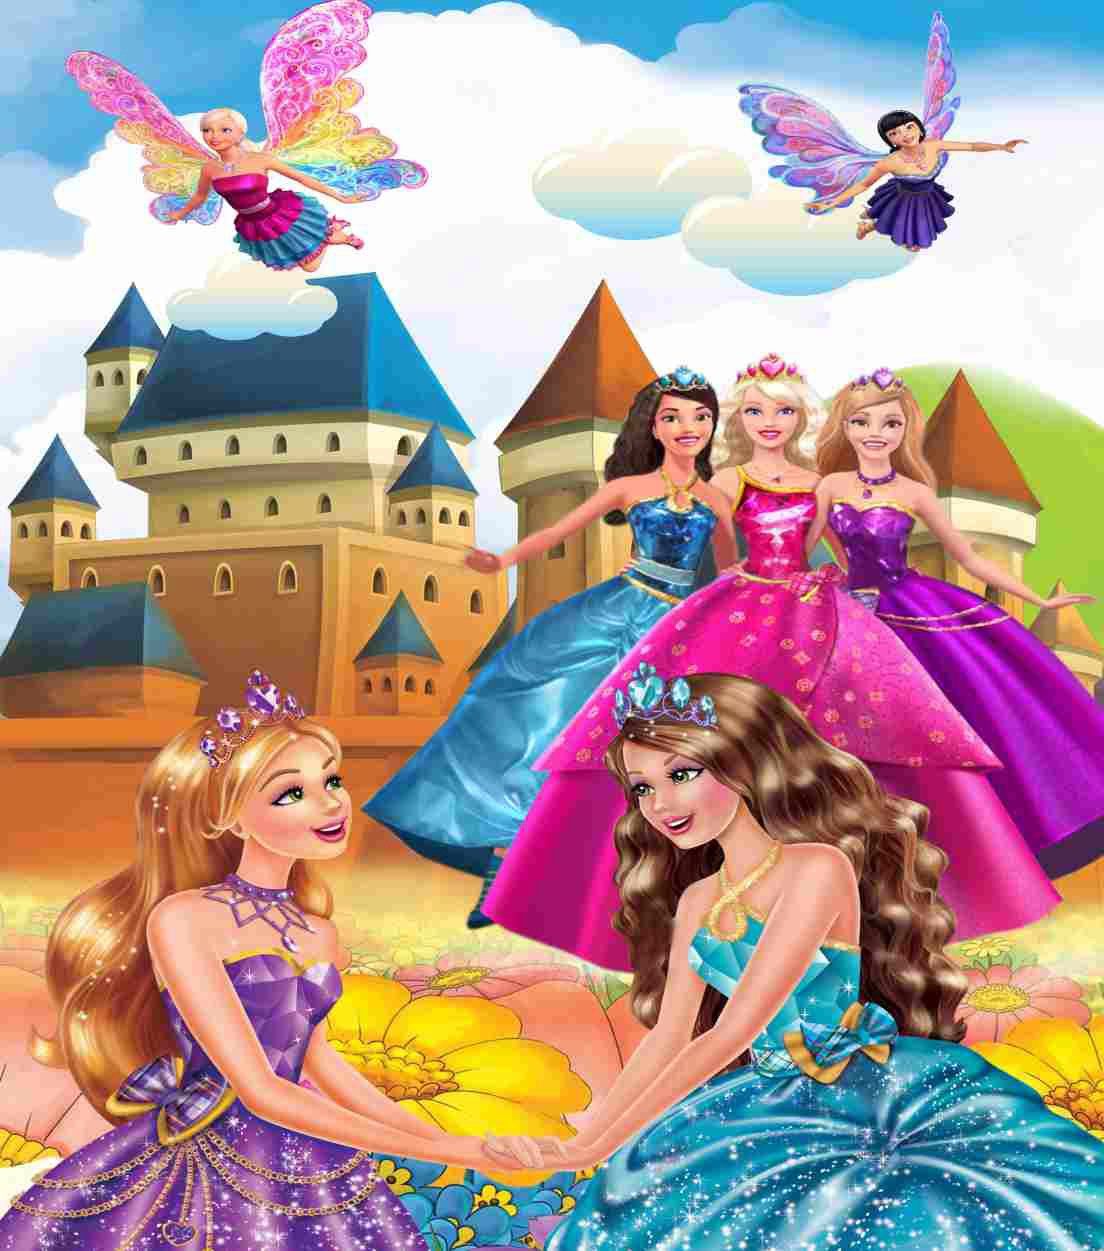 Wallpaper Dasktop Gambar Barbie 3d Image Num 20